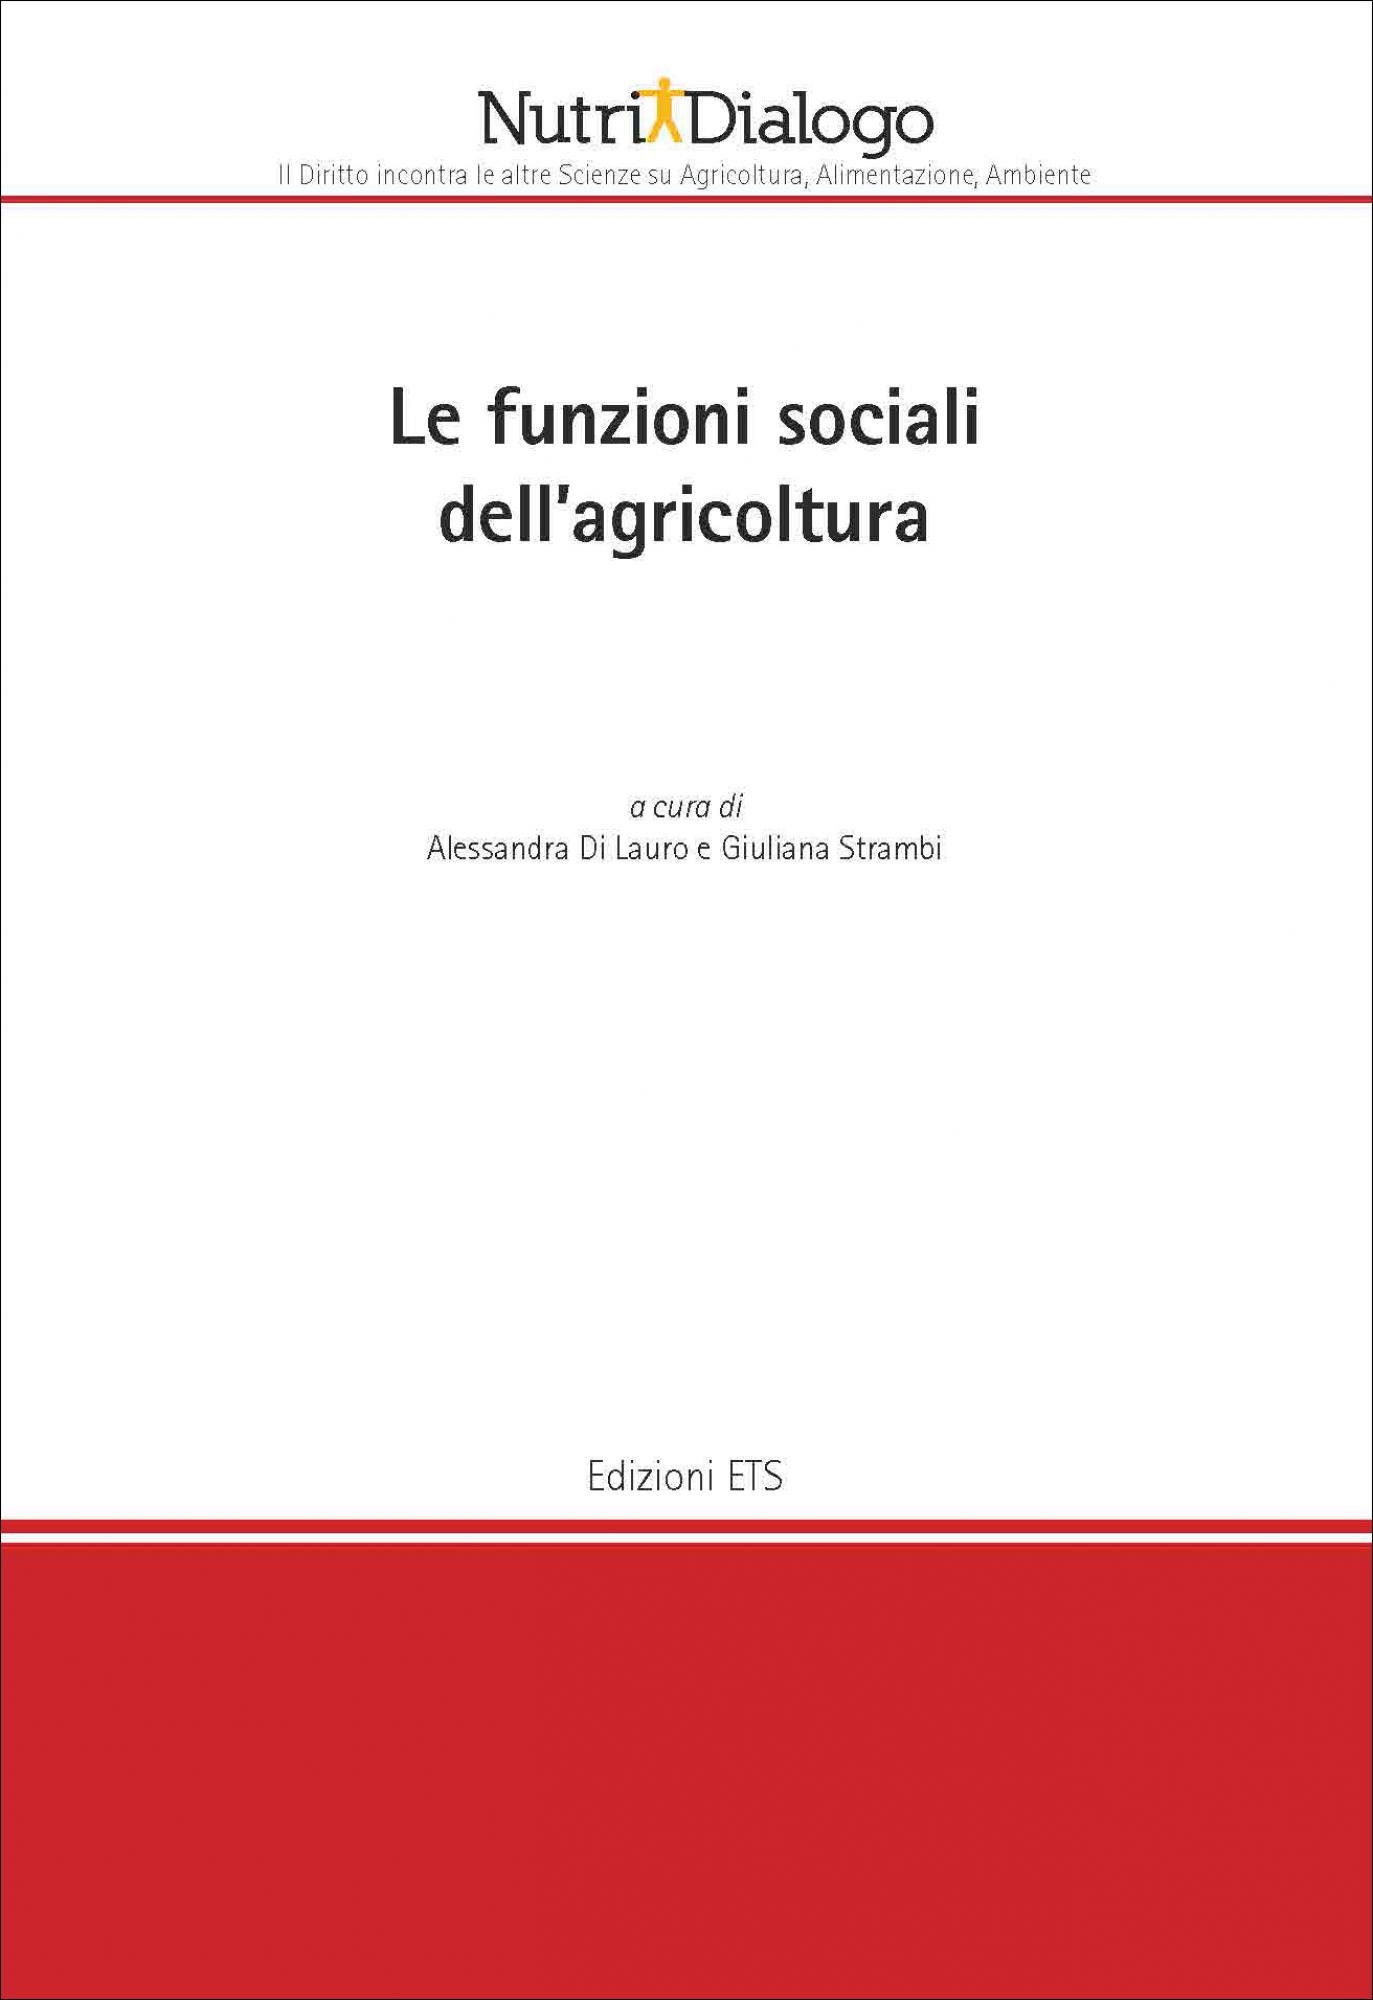 Le funzioni sociali dell’agricoltura